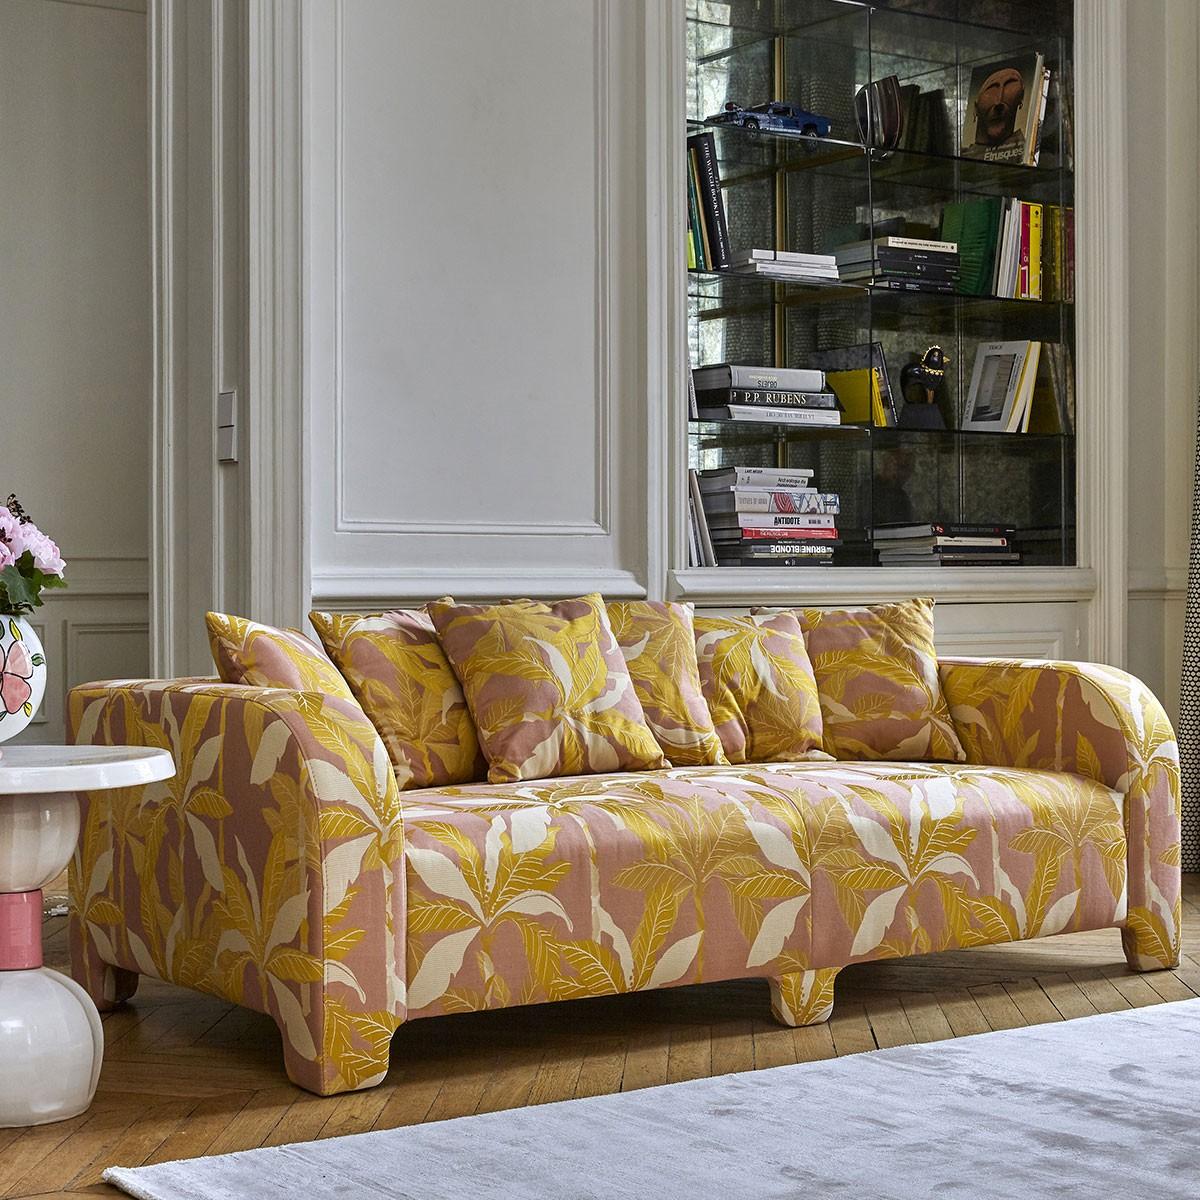 Popus Editions Graziella 3 Seater-Sofa mit orangefarbener Verone-Samtpolsterung

Ein Fuß, der einen anderen verbirgt. Ein Kissen, das ein anderes verdeckt. Eine Kurve, die eine andere verbirgt, mit zeitgenössischen Linien und einem Sockel, der wie